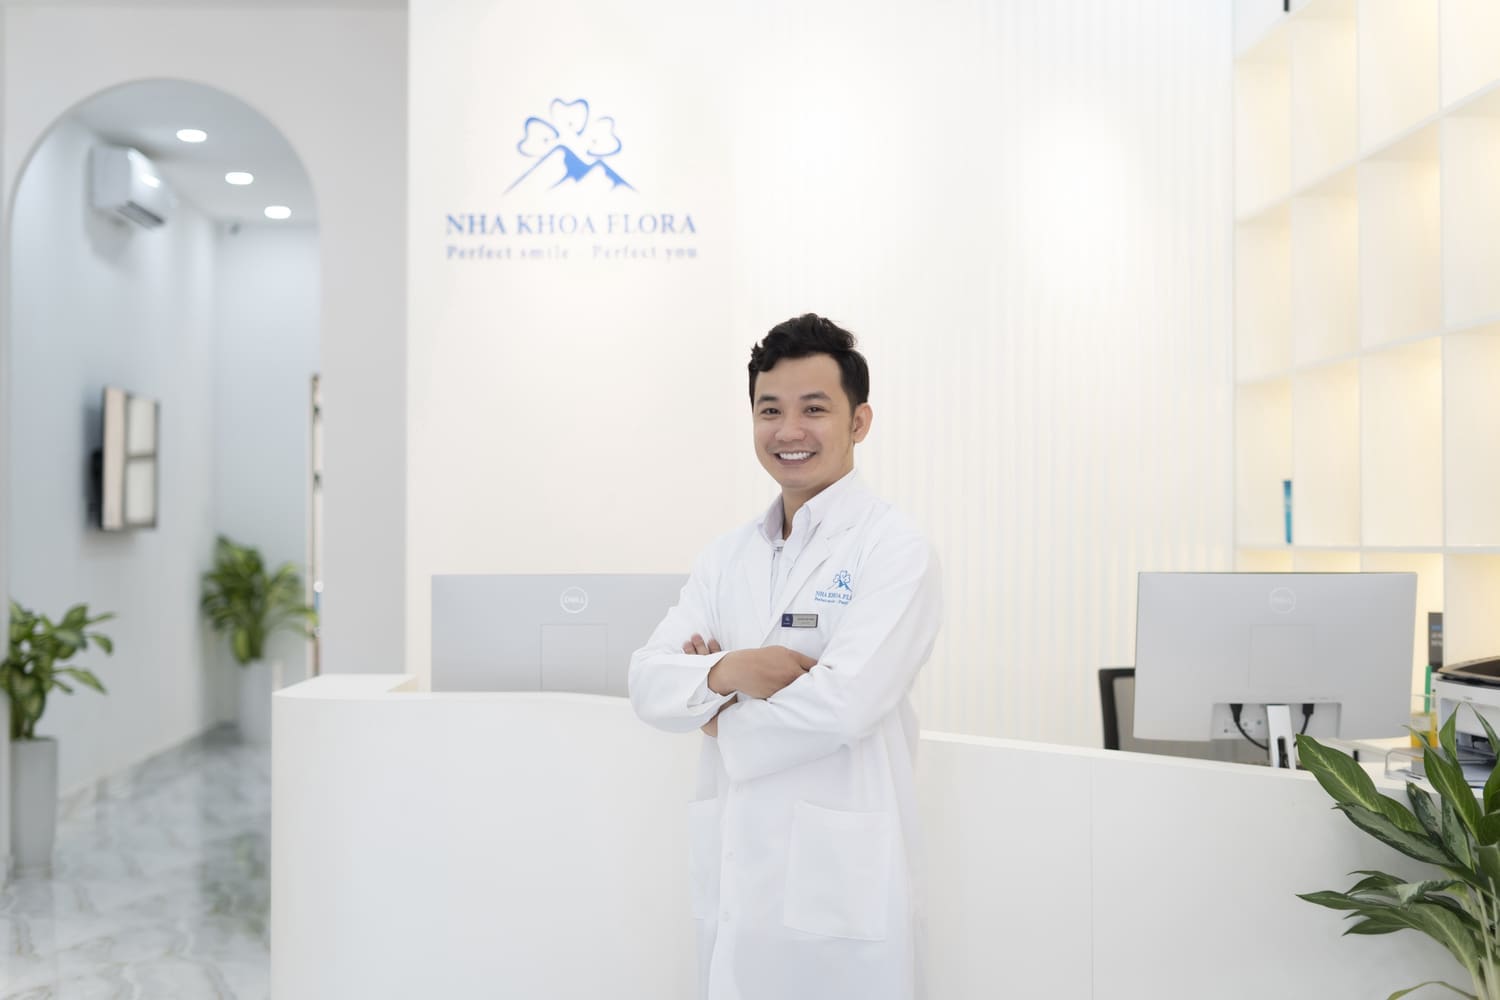 Bác sĩ Nguyễn Đắc Minh